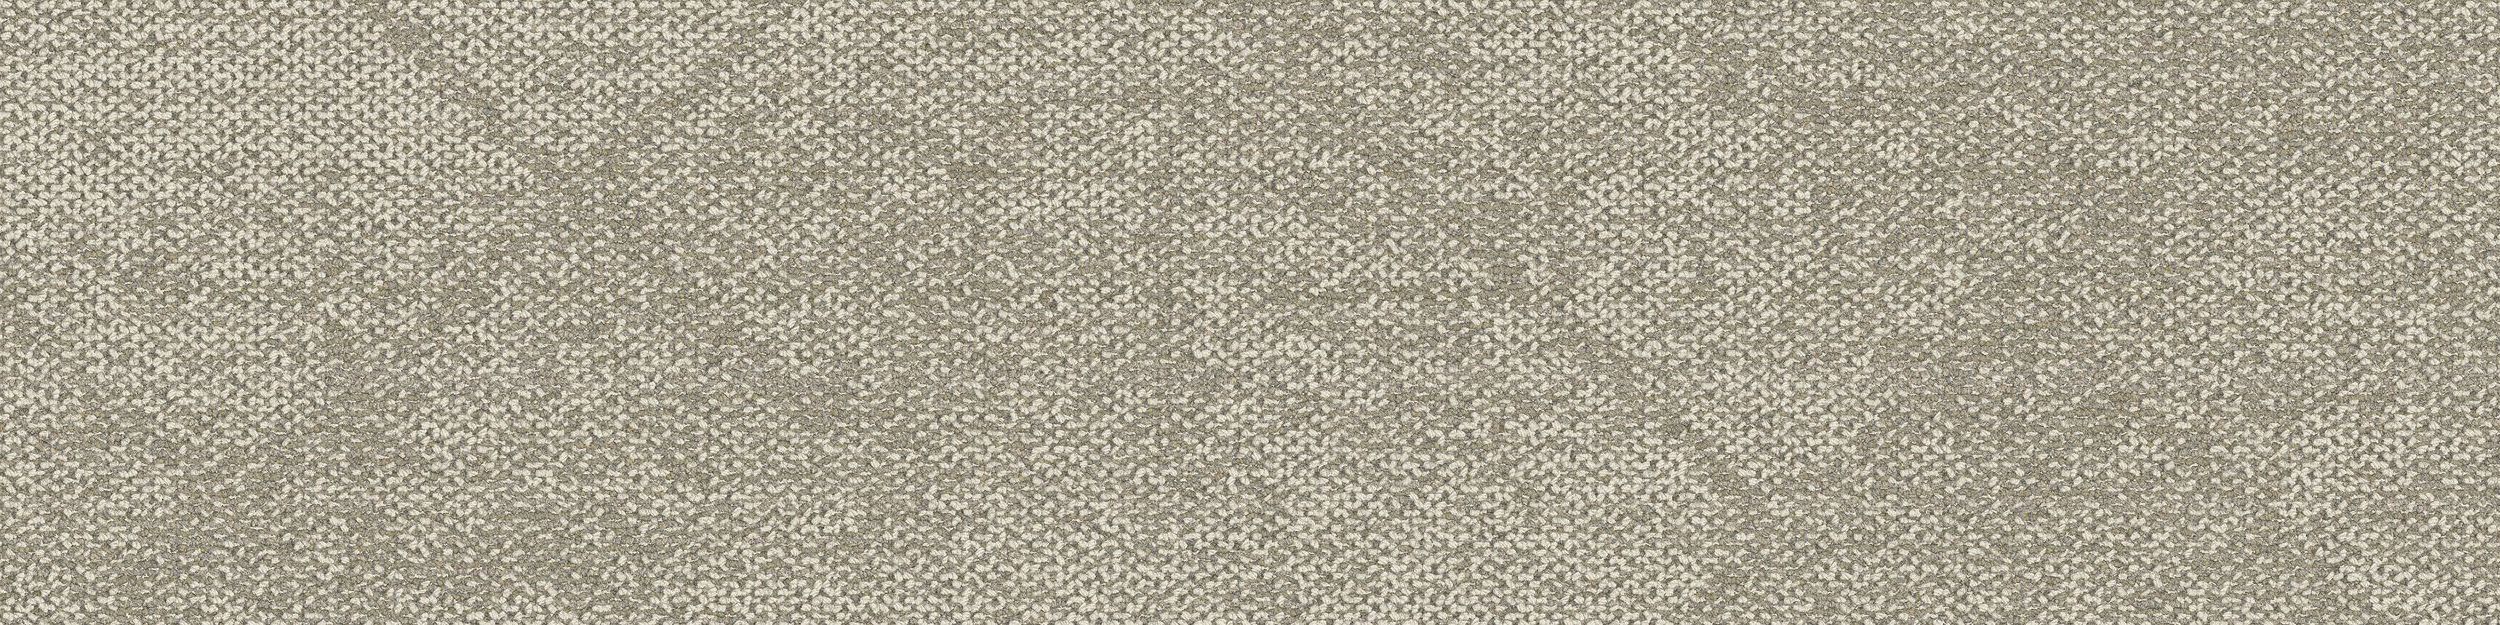 Angle Up Carpet Tile In Sulfur imagen número 2